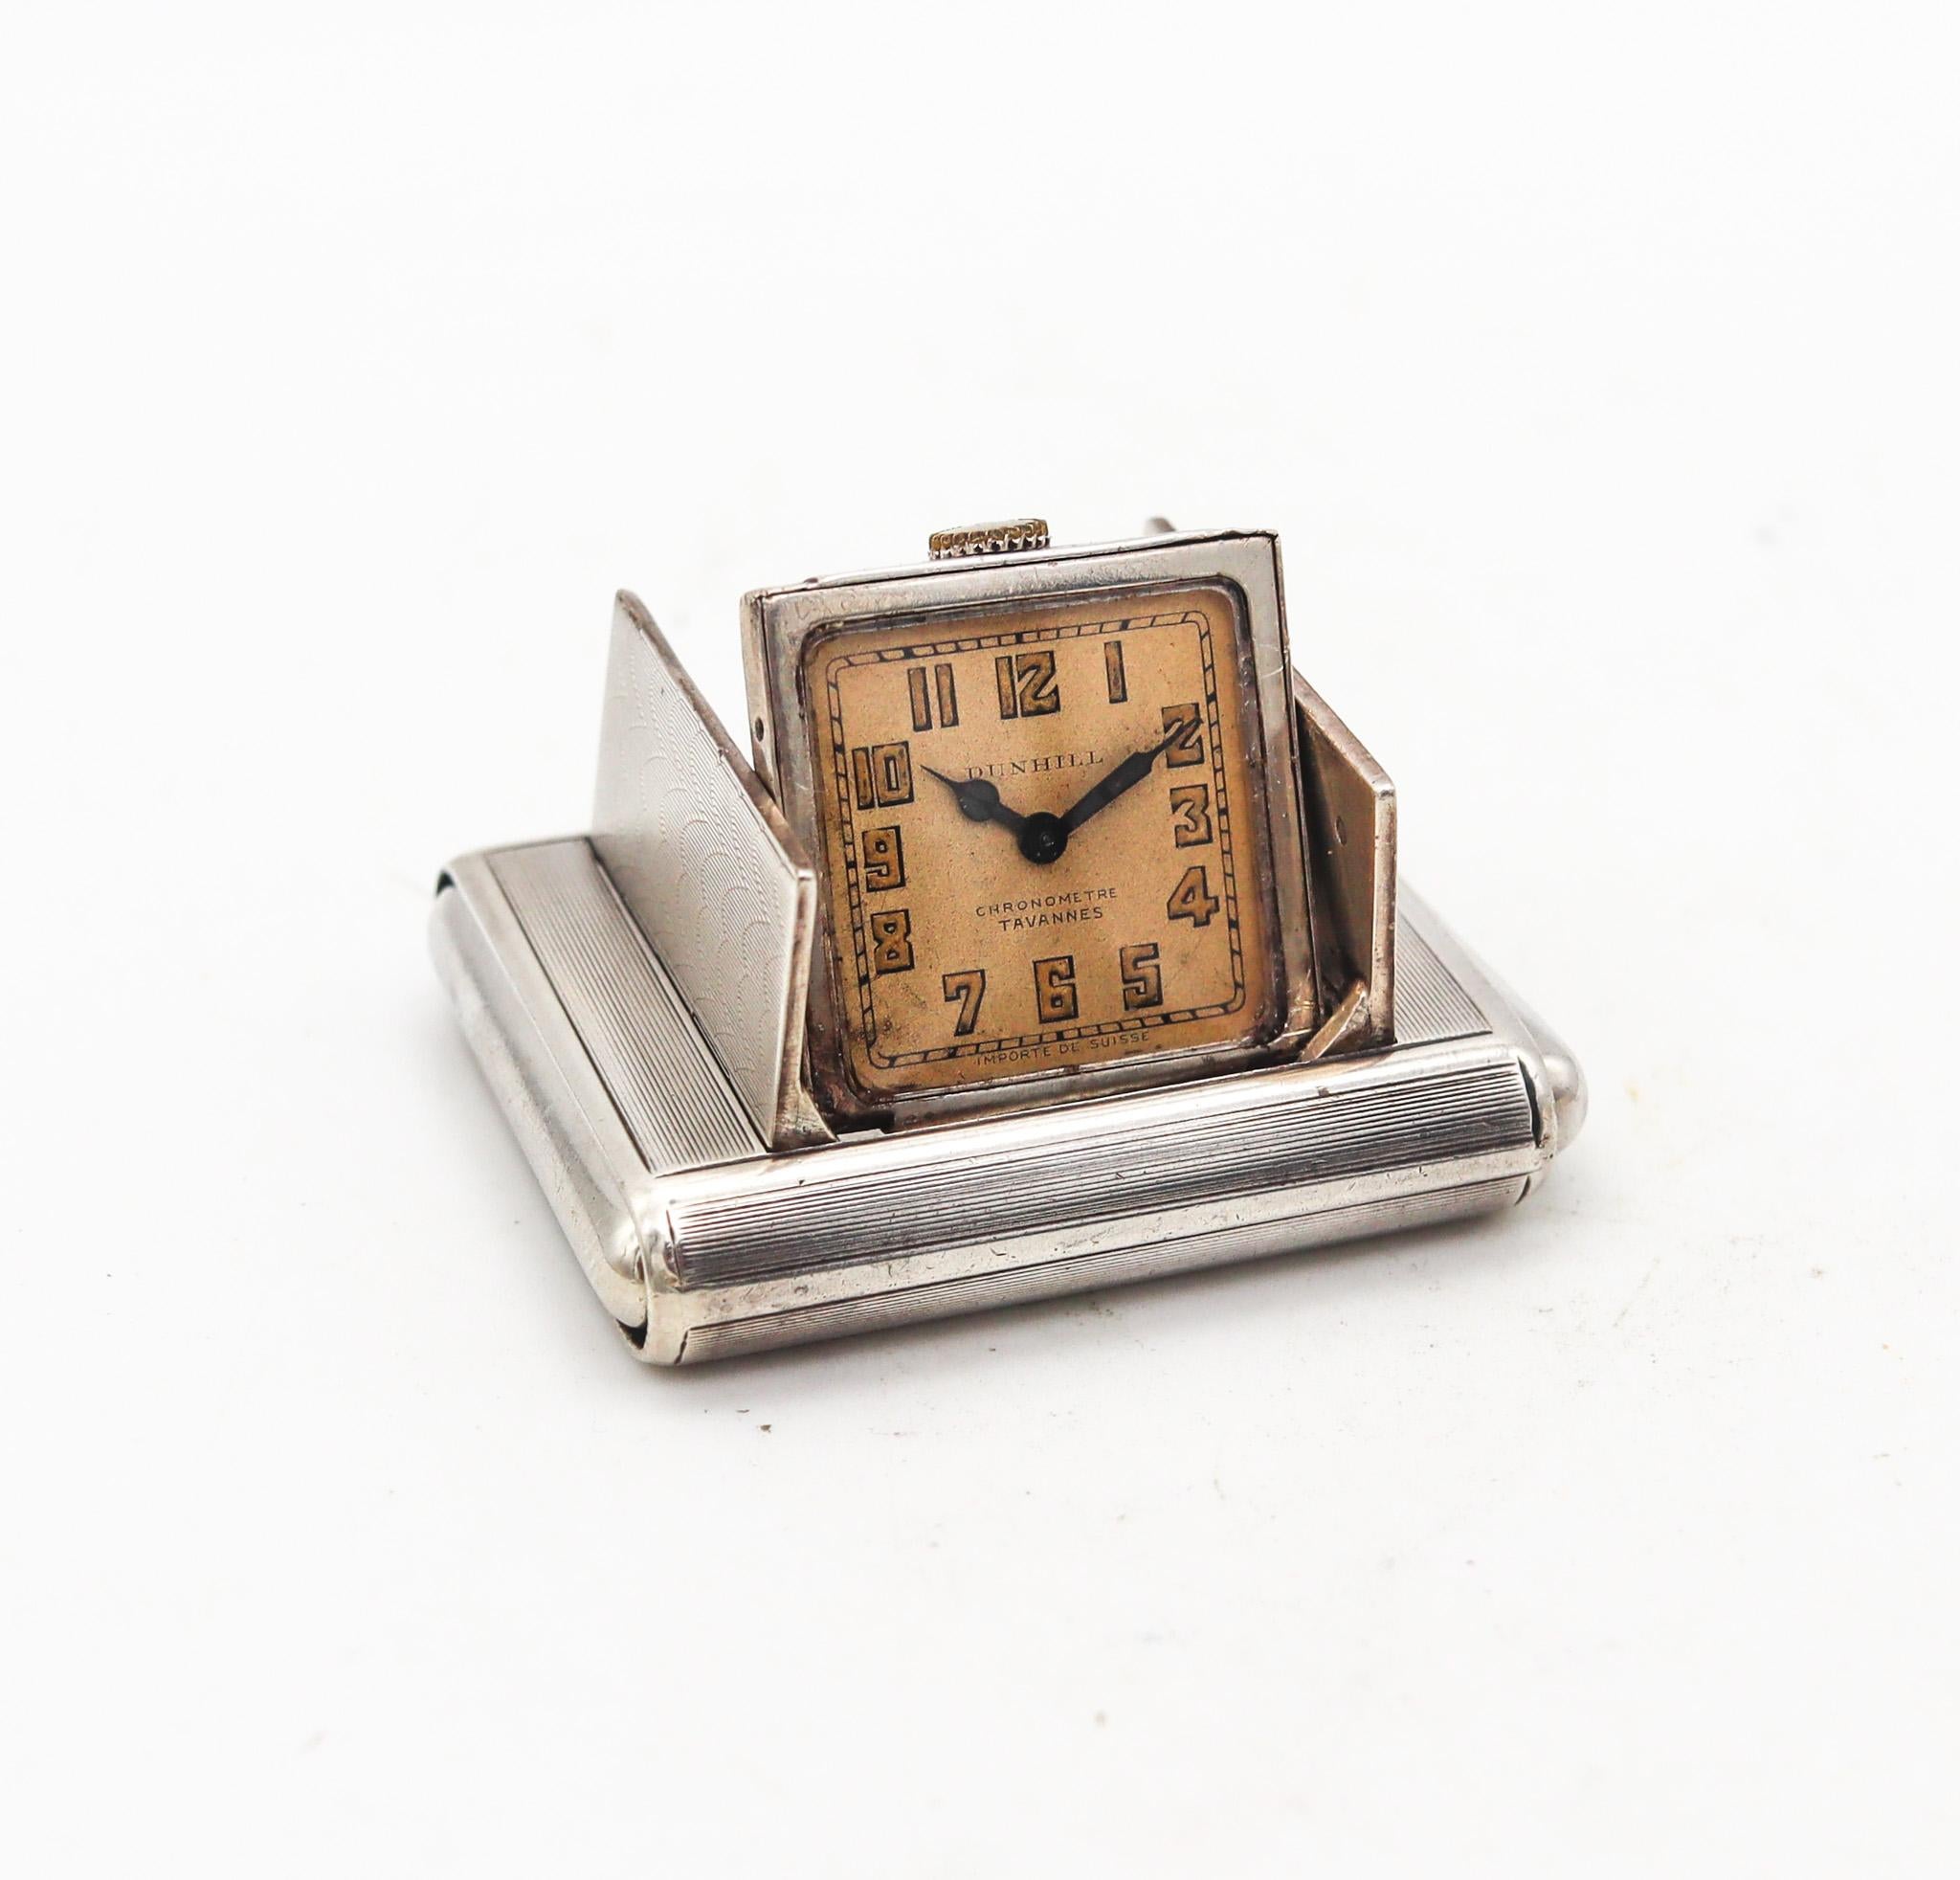 Art-déco-Uhr für die Reisetasche La Captive, entworfen für Alfred Dunhill.

Schöne und sehr ungewöhnliche verdeckte 